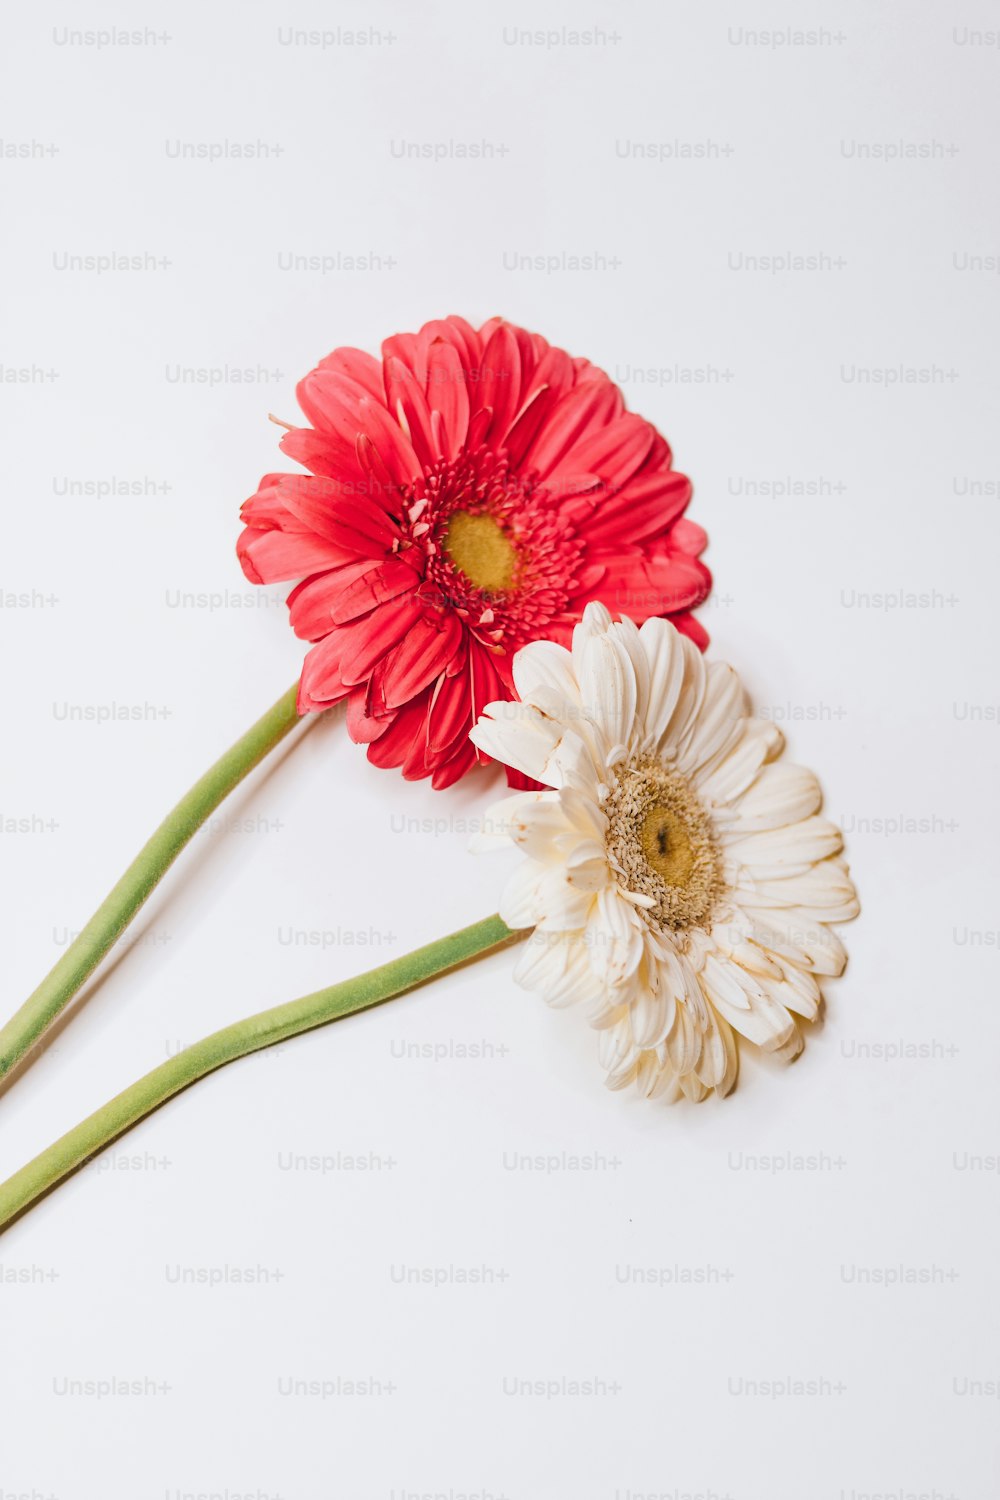 due fiori rossi e bianchi su una superficie bianca